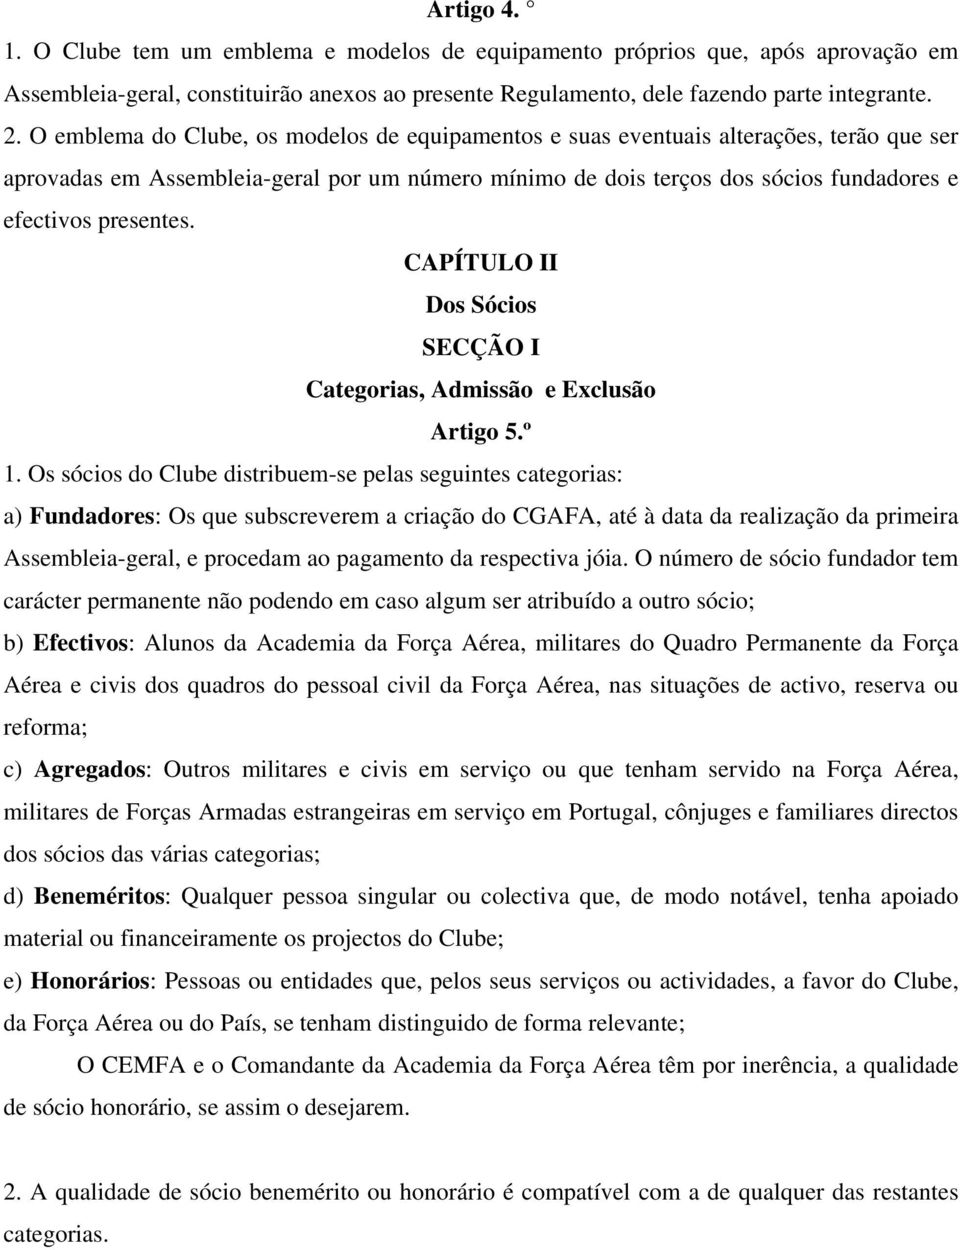 CAPÍTULO II Dos Sócios SECÇÃO I Categorias, Admissão e Exclusão Artigo 5.º 1.